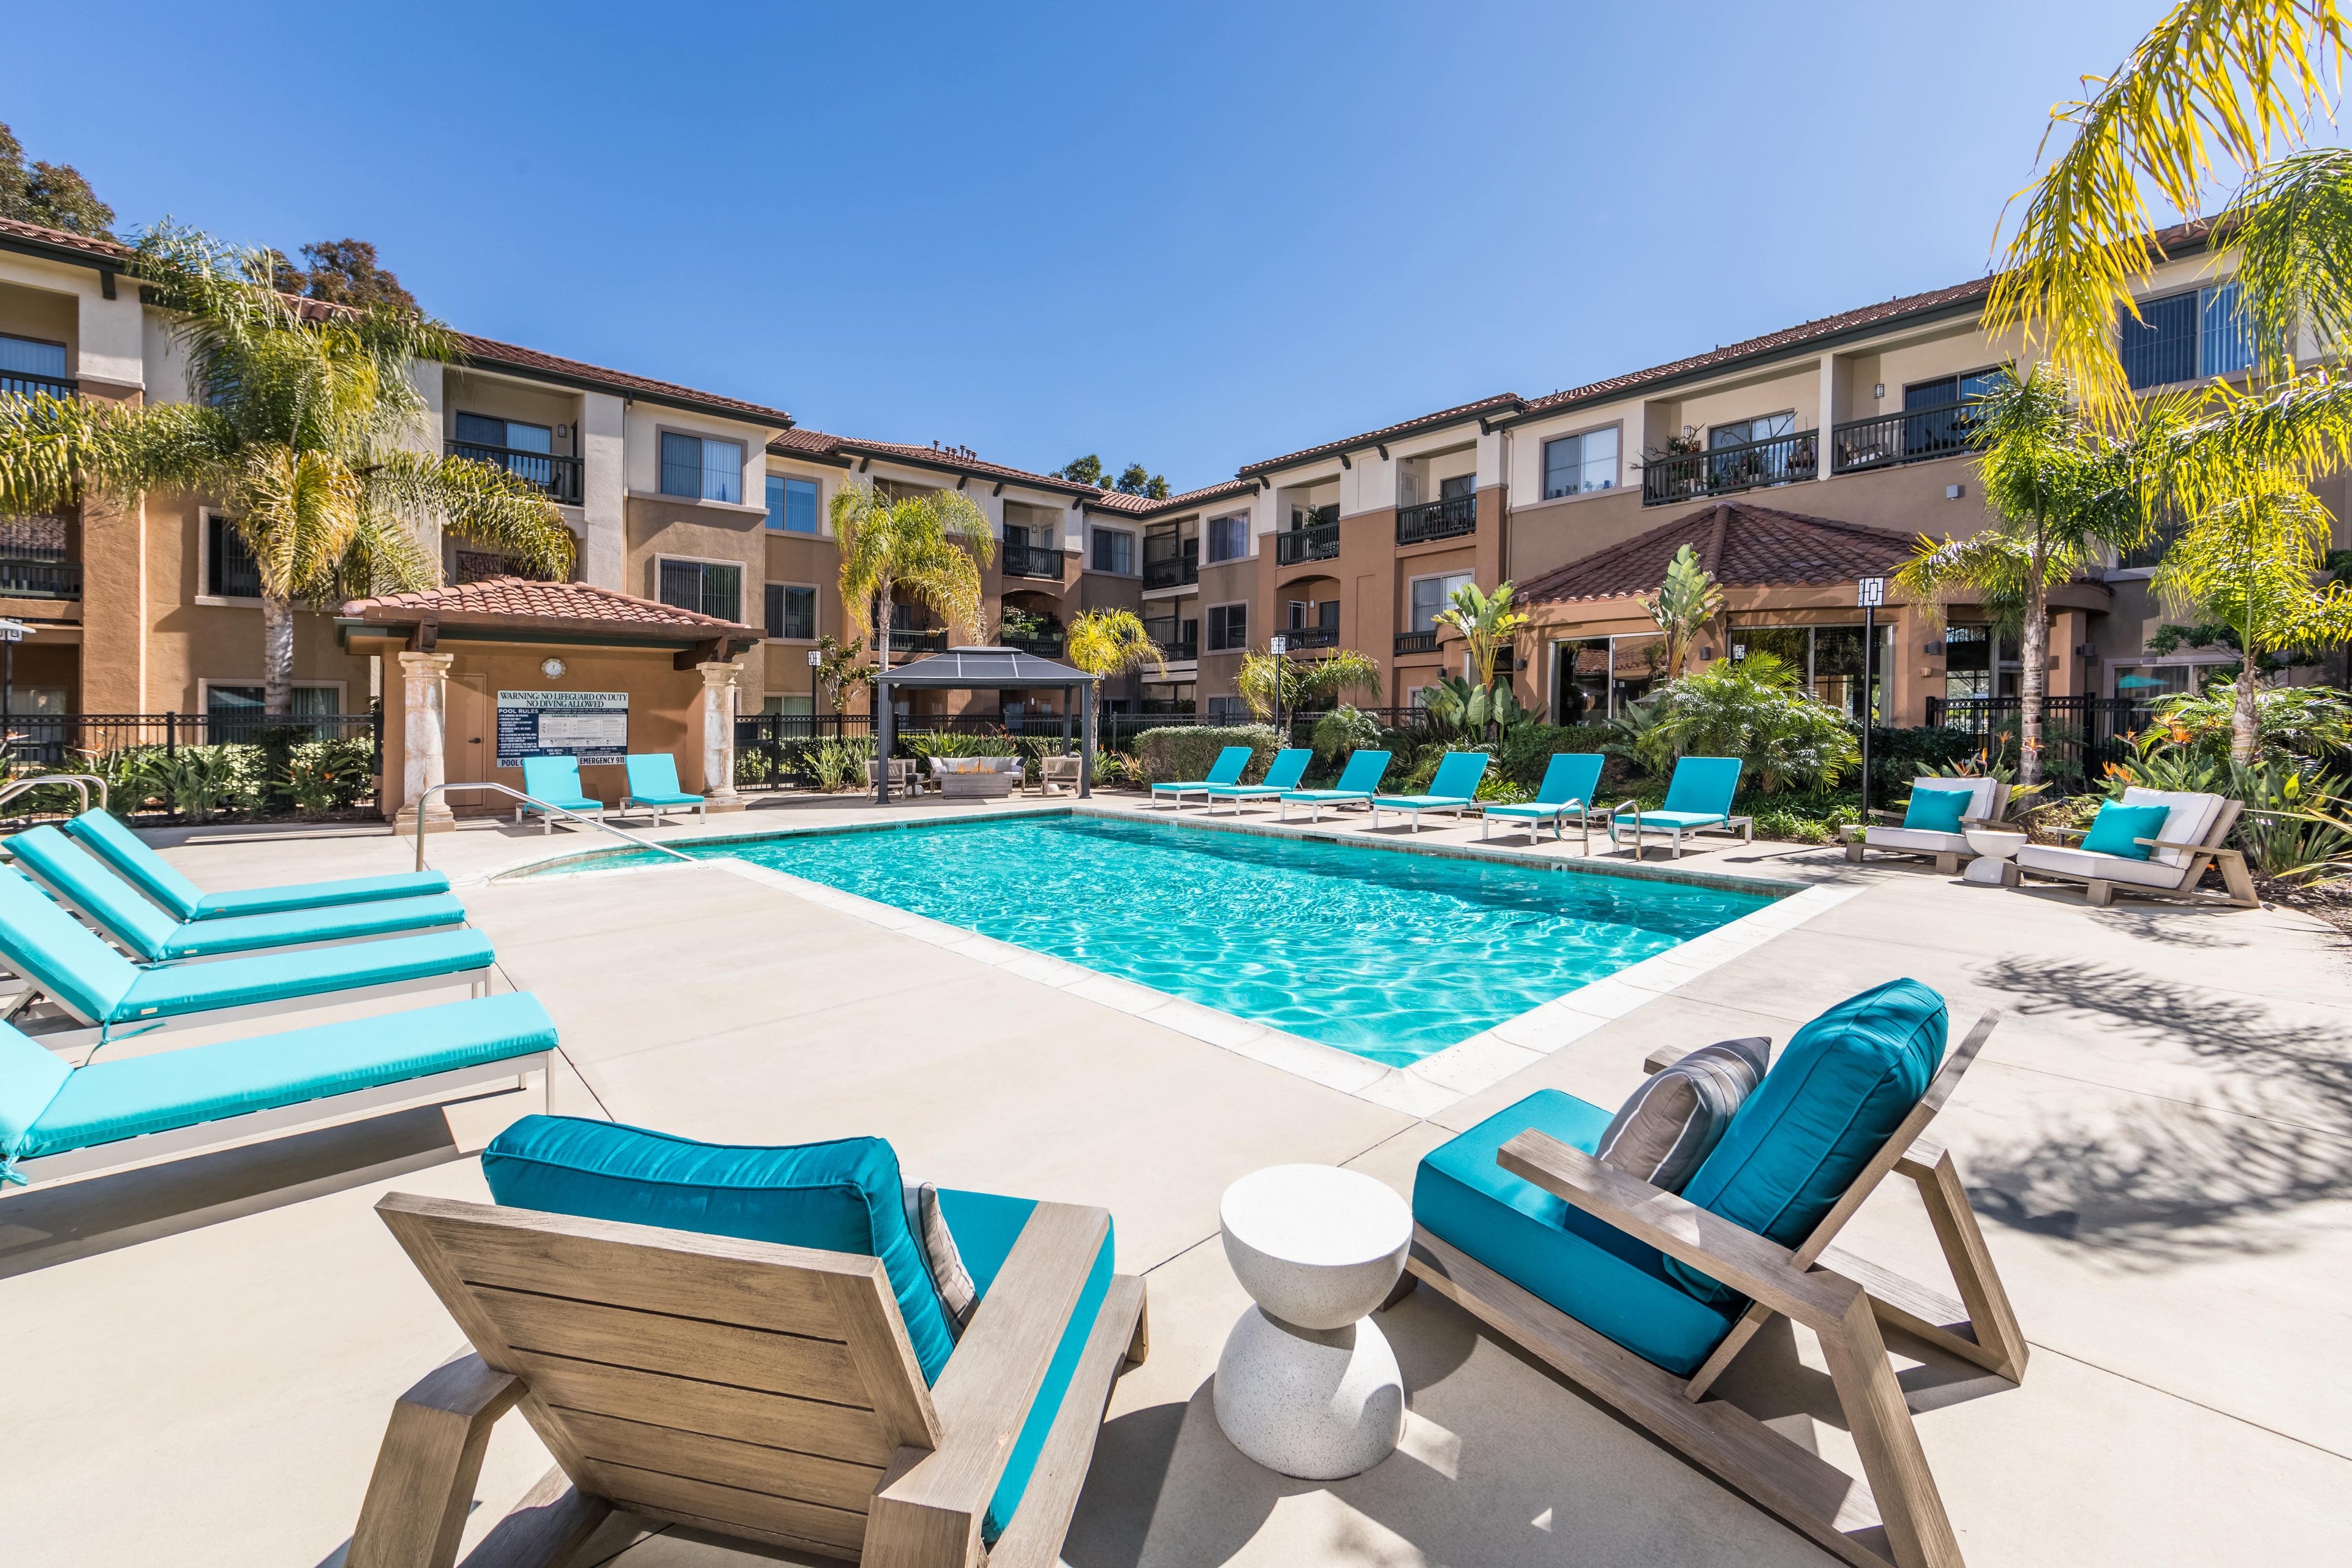 Overture Rancho Santa Margarita 55+ Apartment Homes image